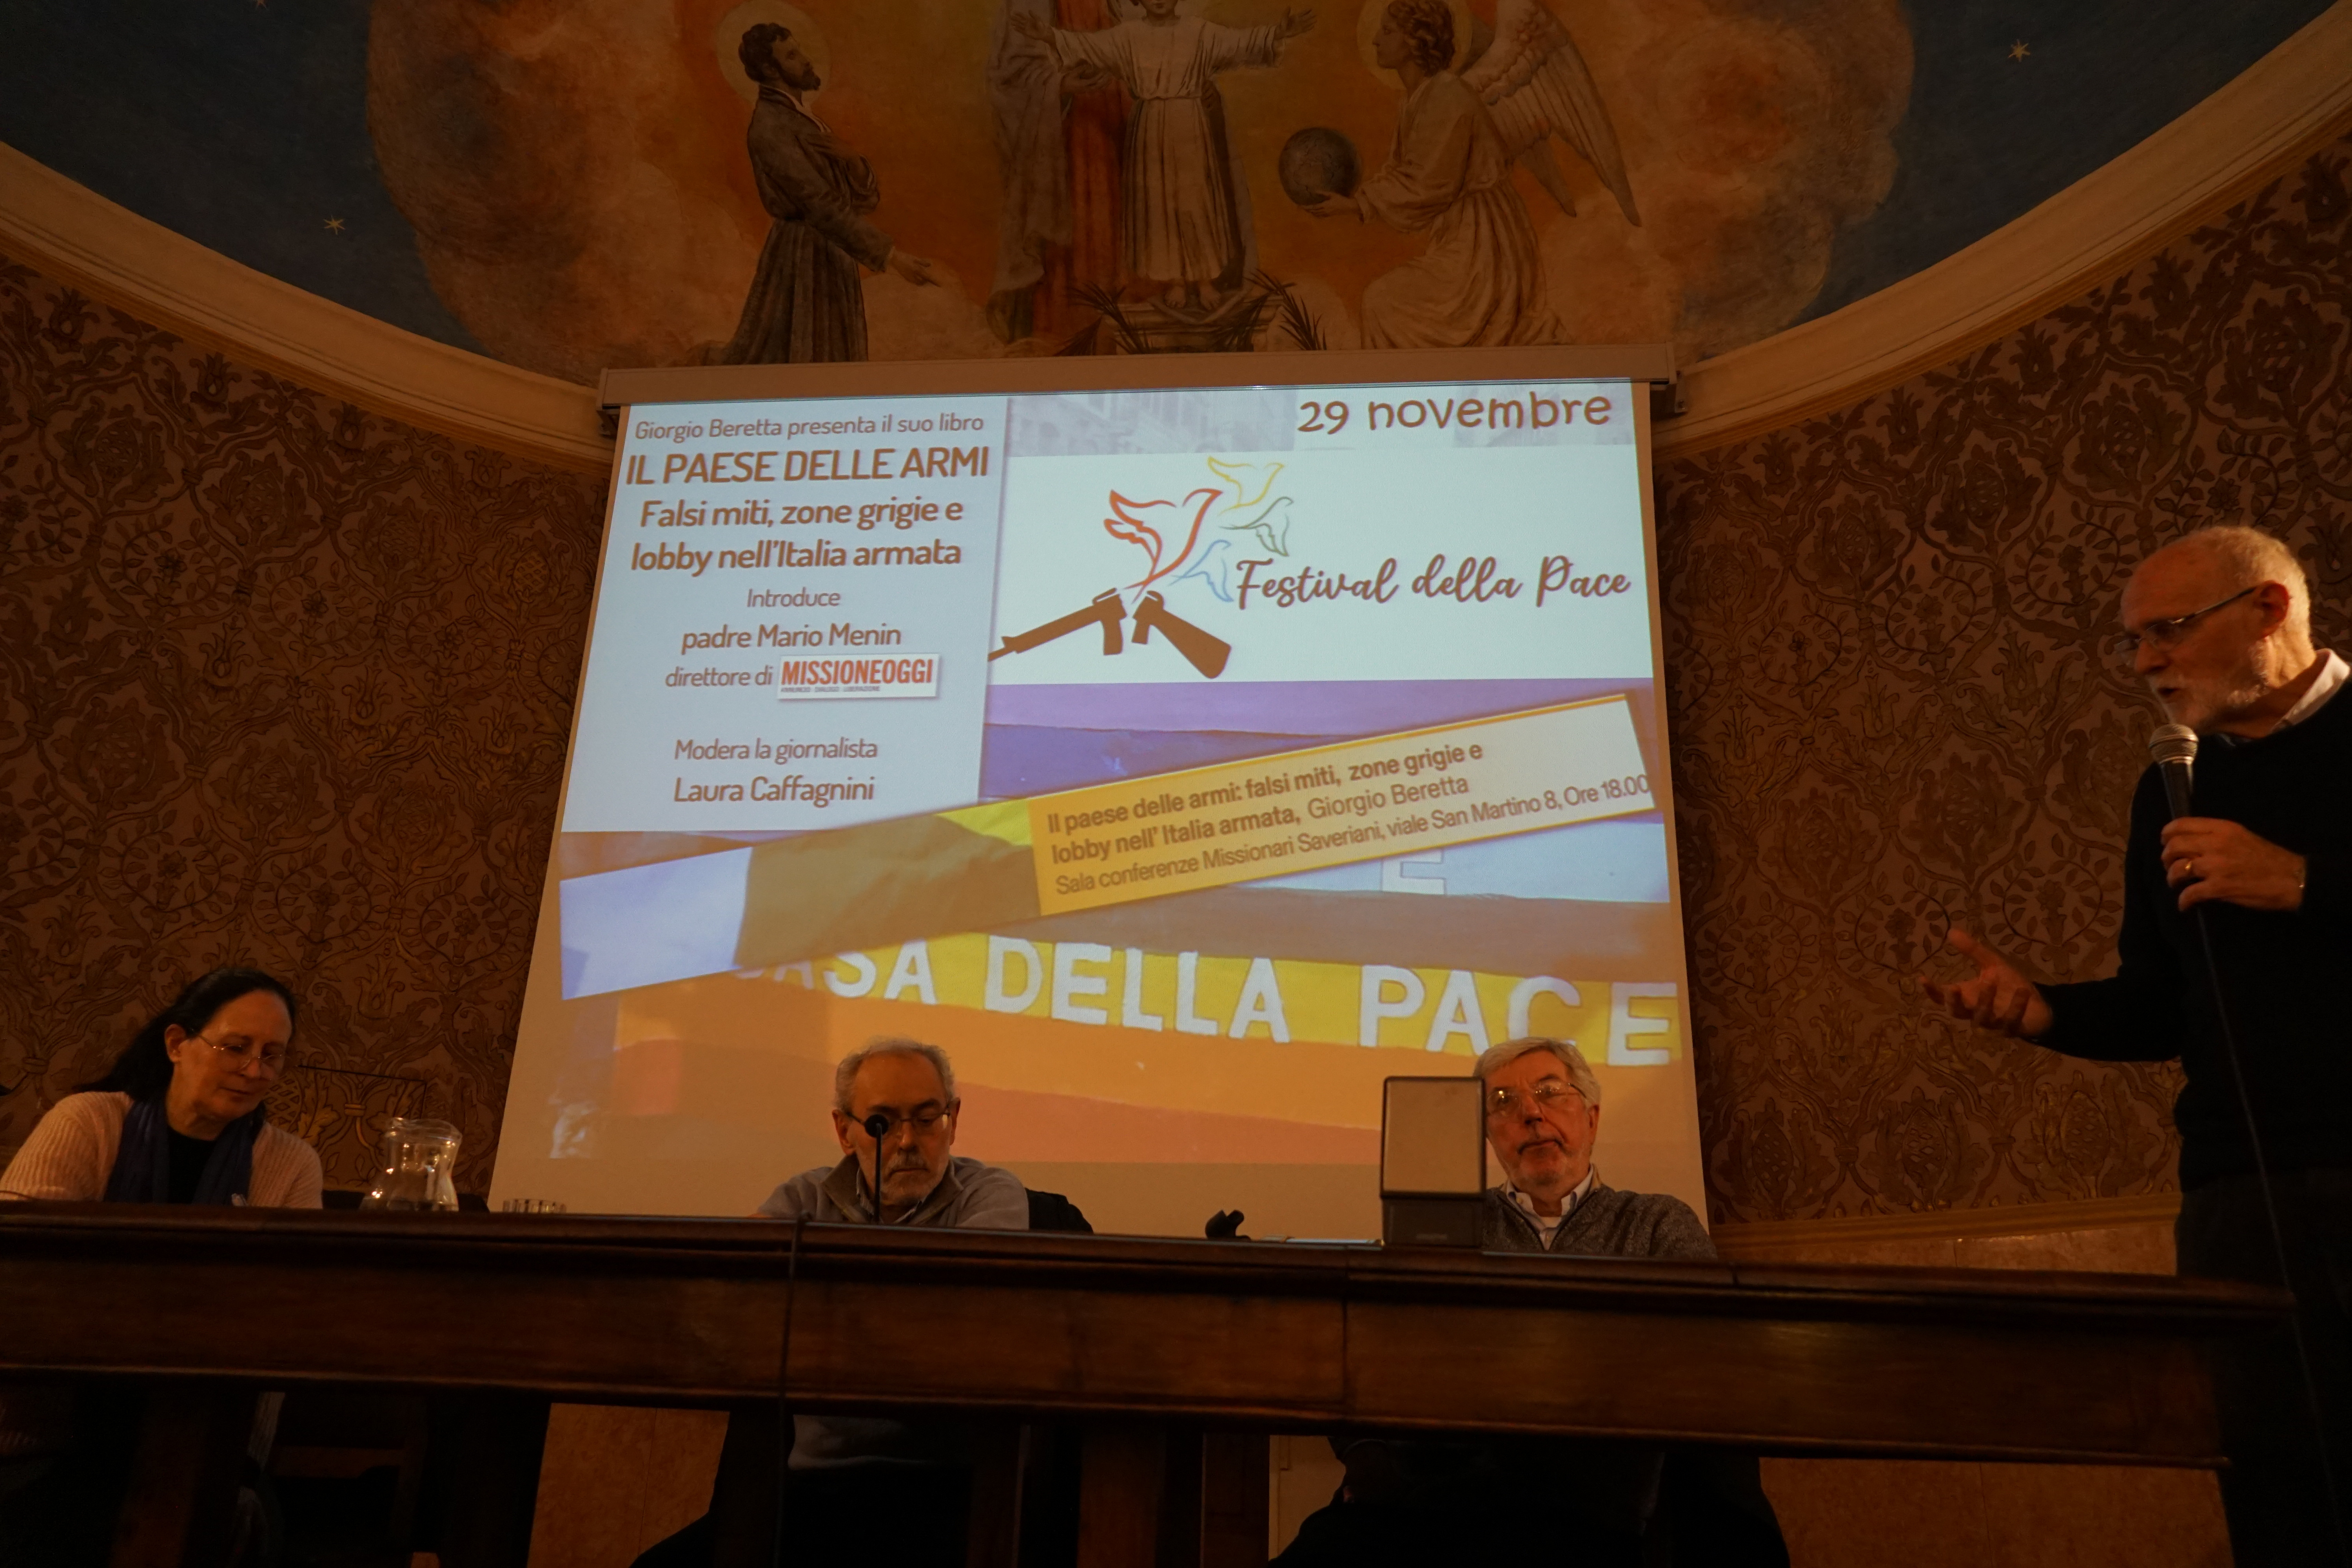 Presentazione del libro “Il paese delle armi: Falsi miti, zone grigie e lobby nell’Italia armata” di Giorgio Beretta